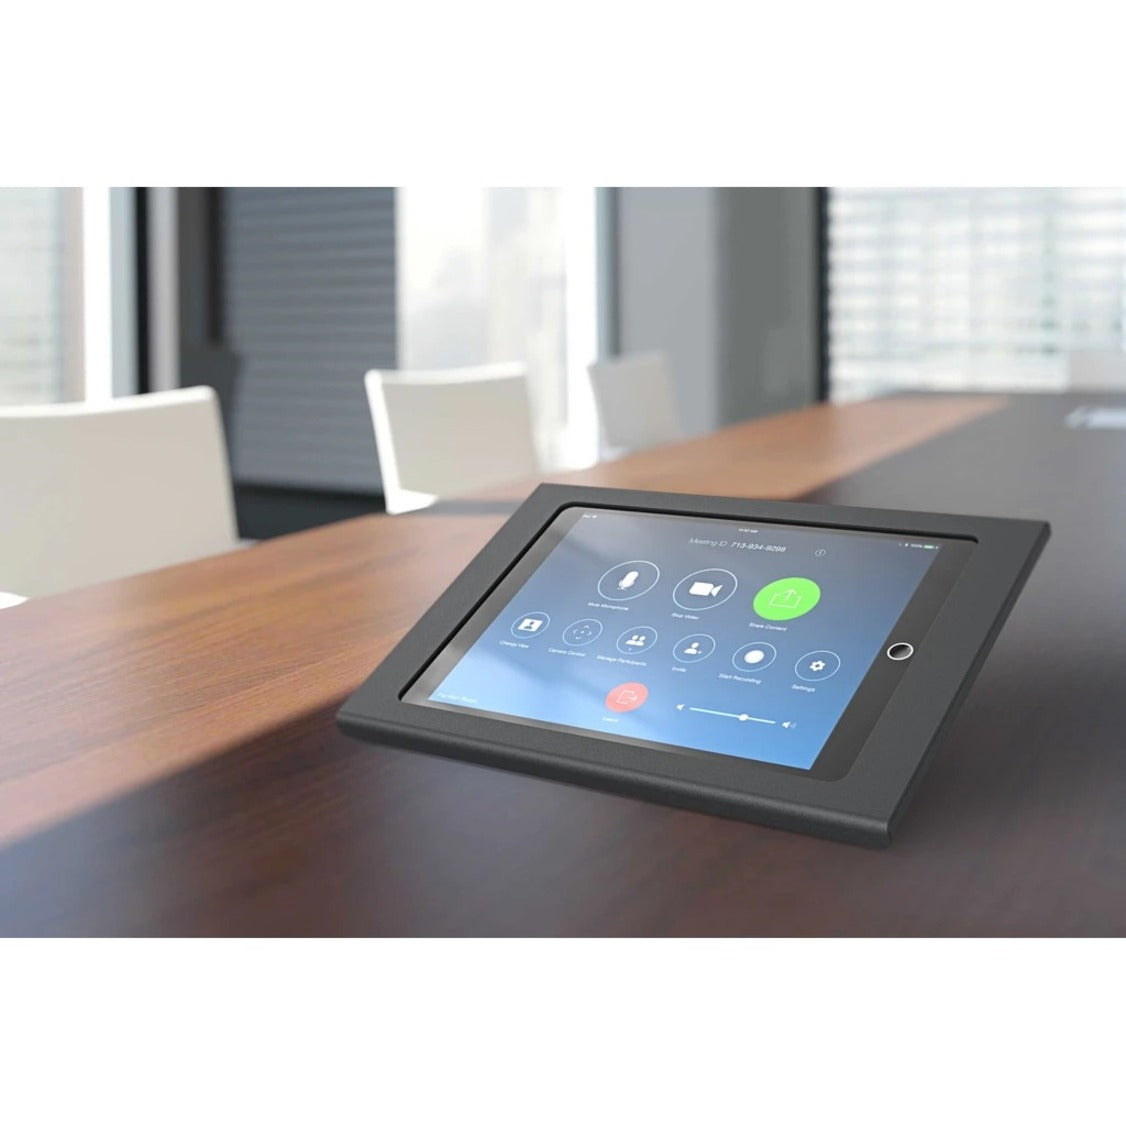 Heckler Design H601-BG Zoom Rooms Console for iPad, Black Gray - Fingerprint Resistant, Theft Resistant, Tamper Resistant, Kensington Security Slot